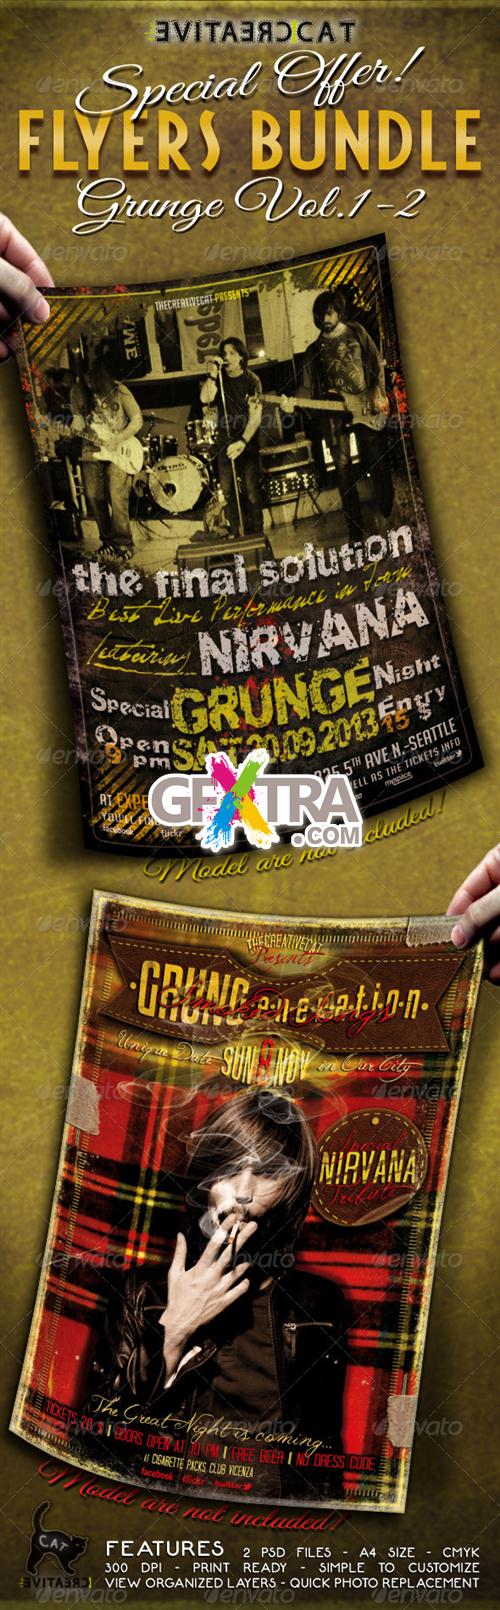 GraphicRiver - Grunge Flyer/Poster Bundle Vol. 1-2